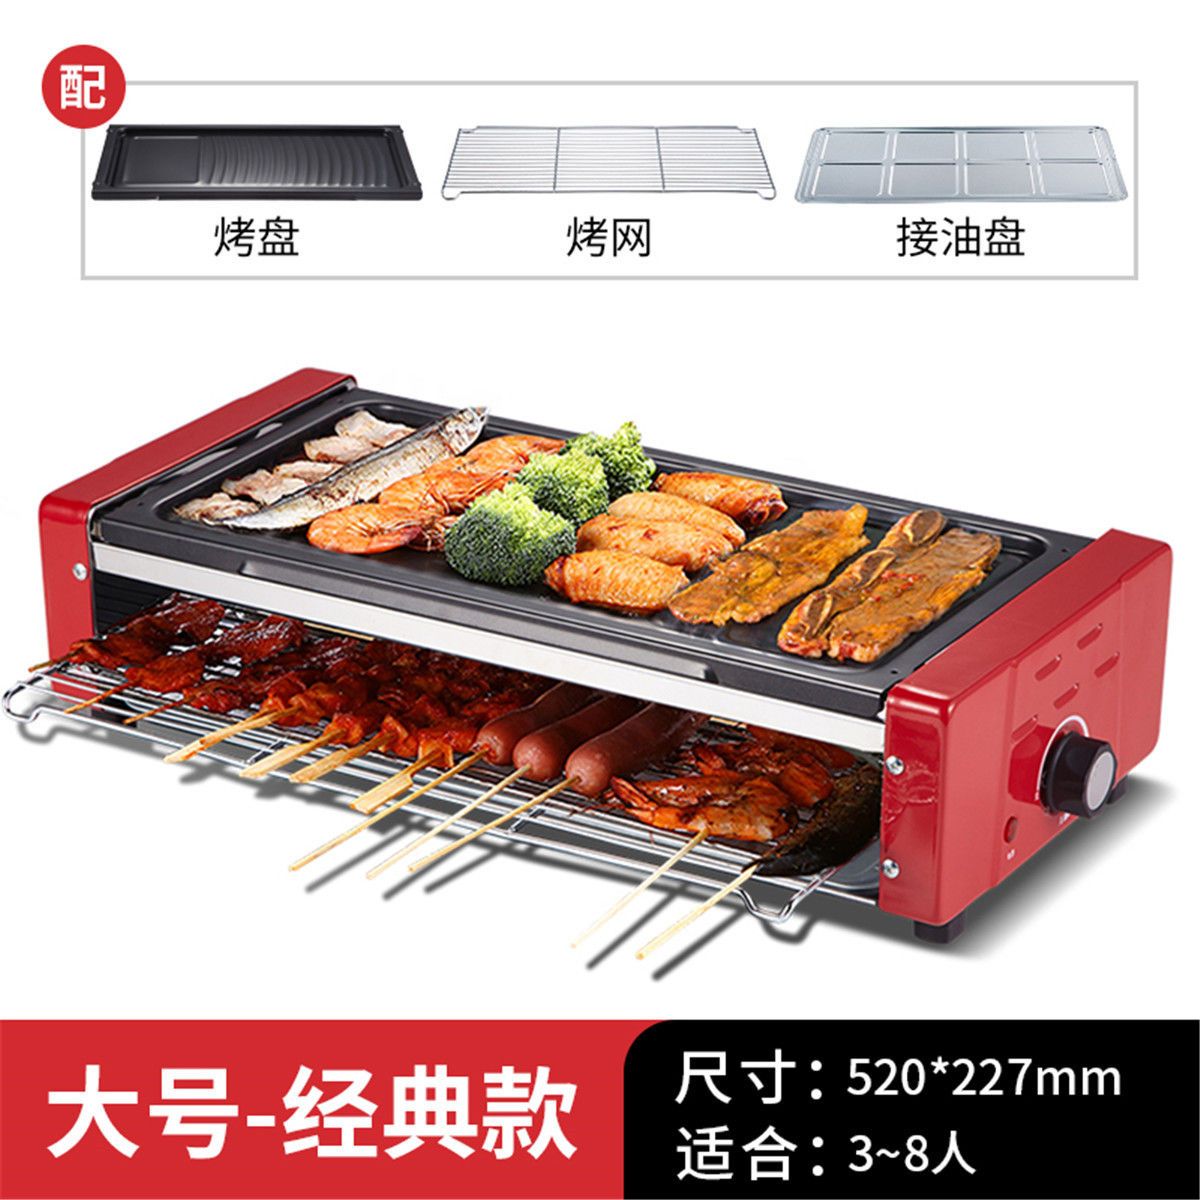 【工厂直销】康佳烤串机电烤炉电烤盘三层家庭插电烤羊肉串烤肉机